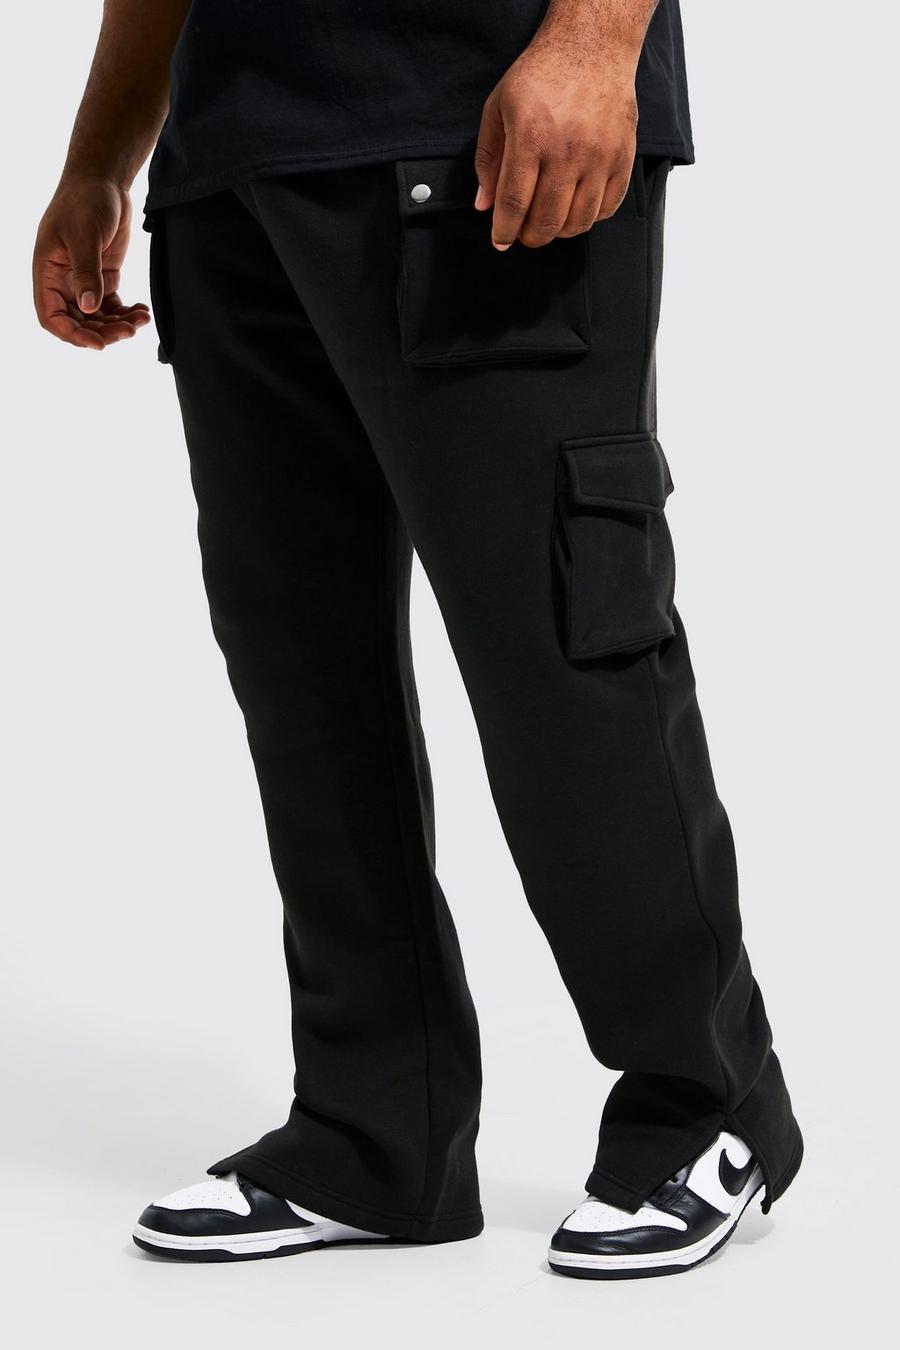 Pantalón deportivo Plus con abertura en el bajo y multibolsillos cargo, Black negro